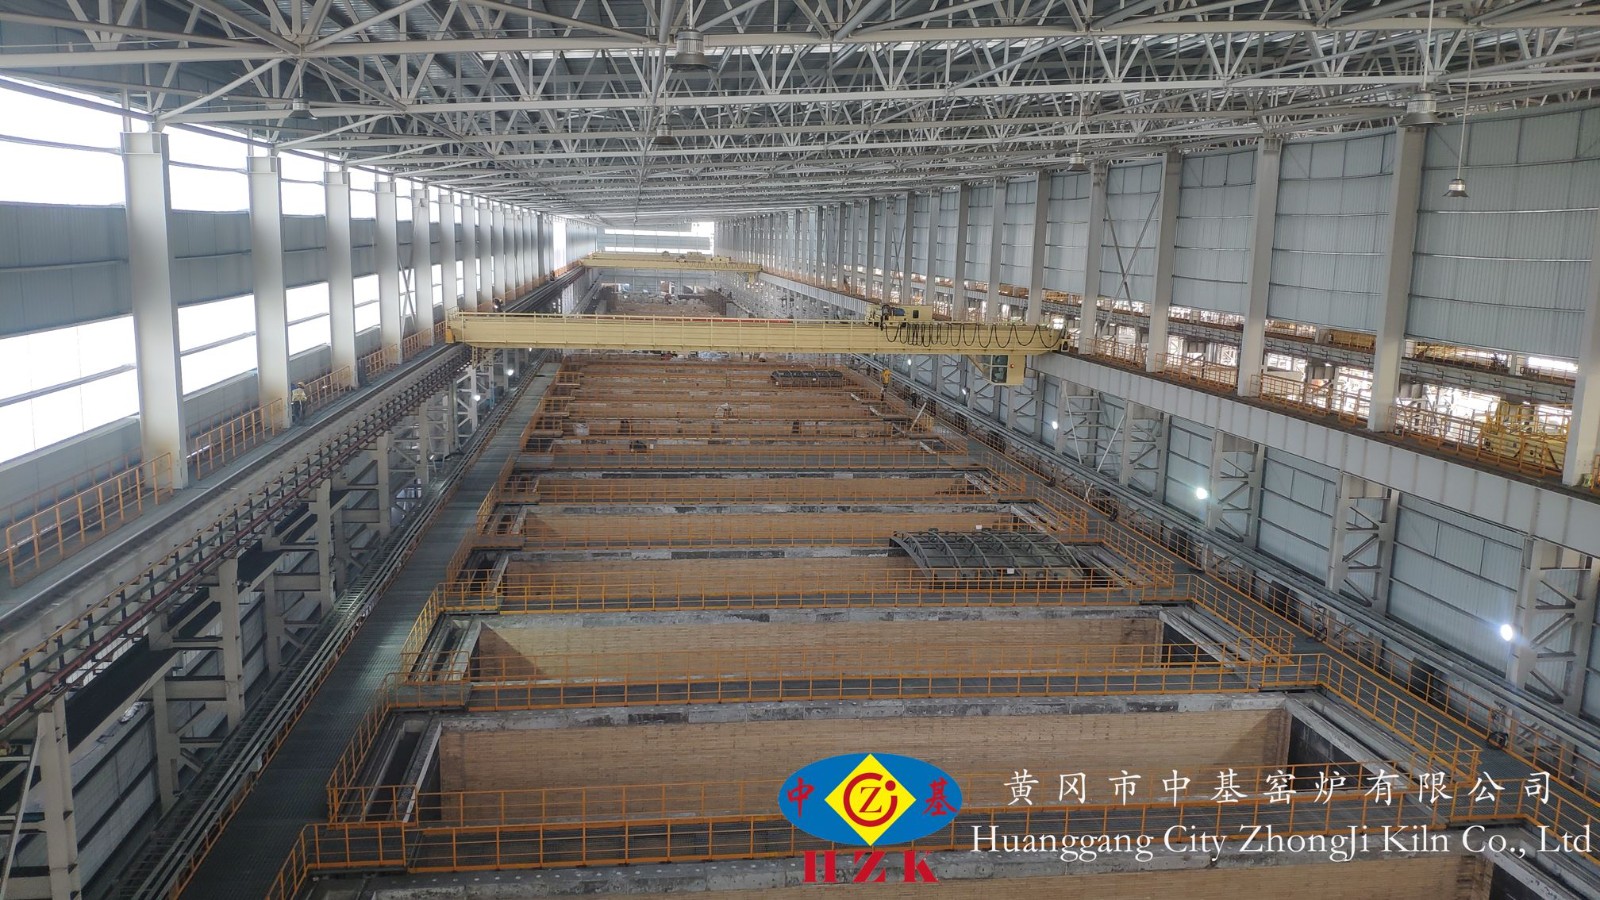 兰州宝航公司年产10万吨负极材料项目石墨化炉建筑与安装工程顺利完工